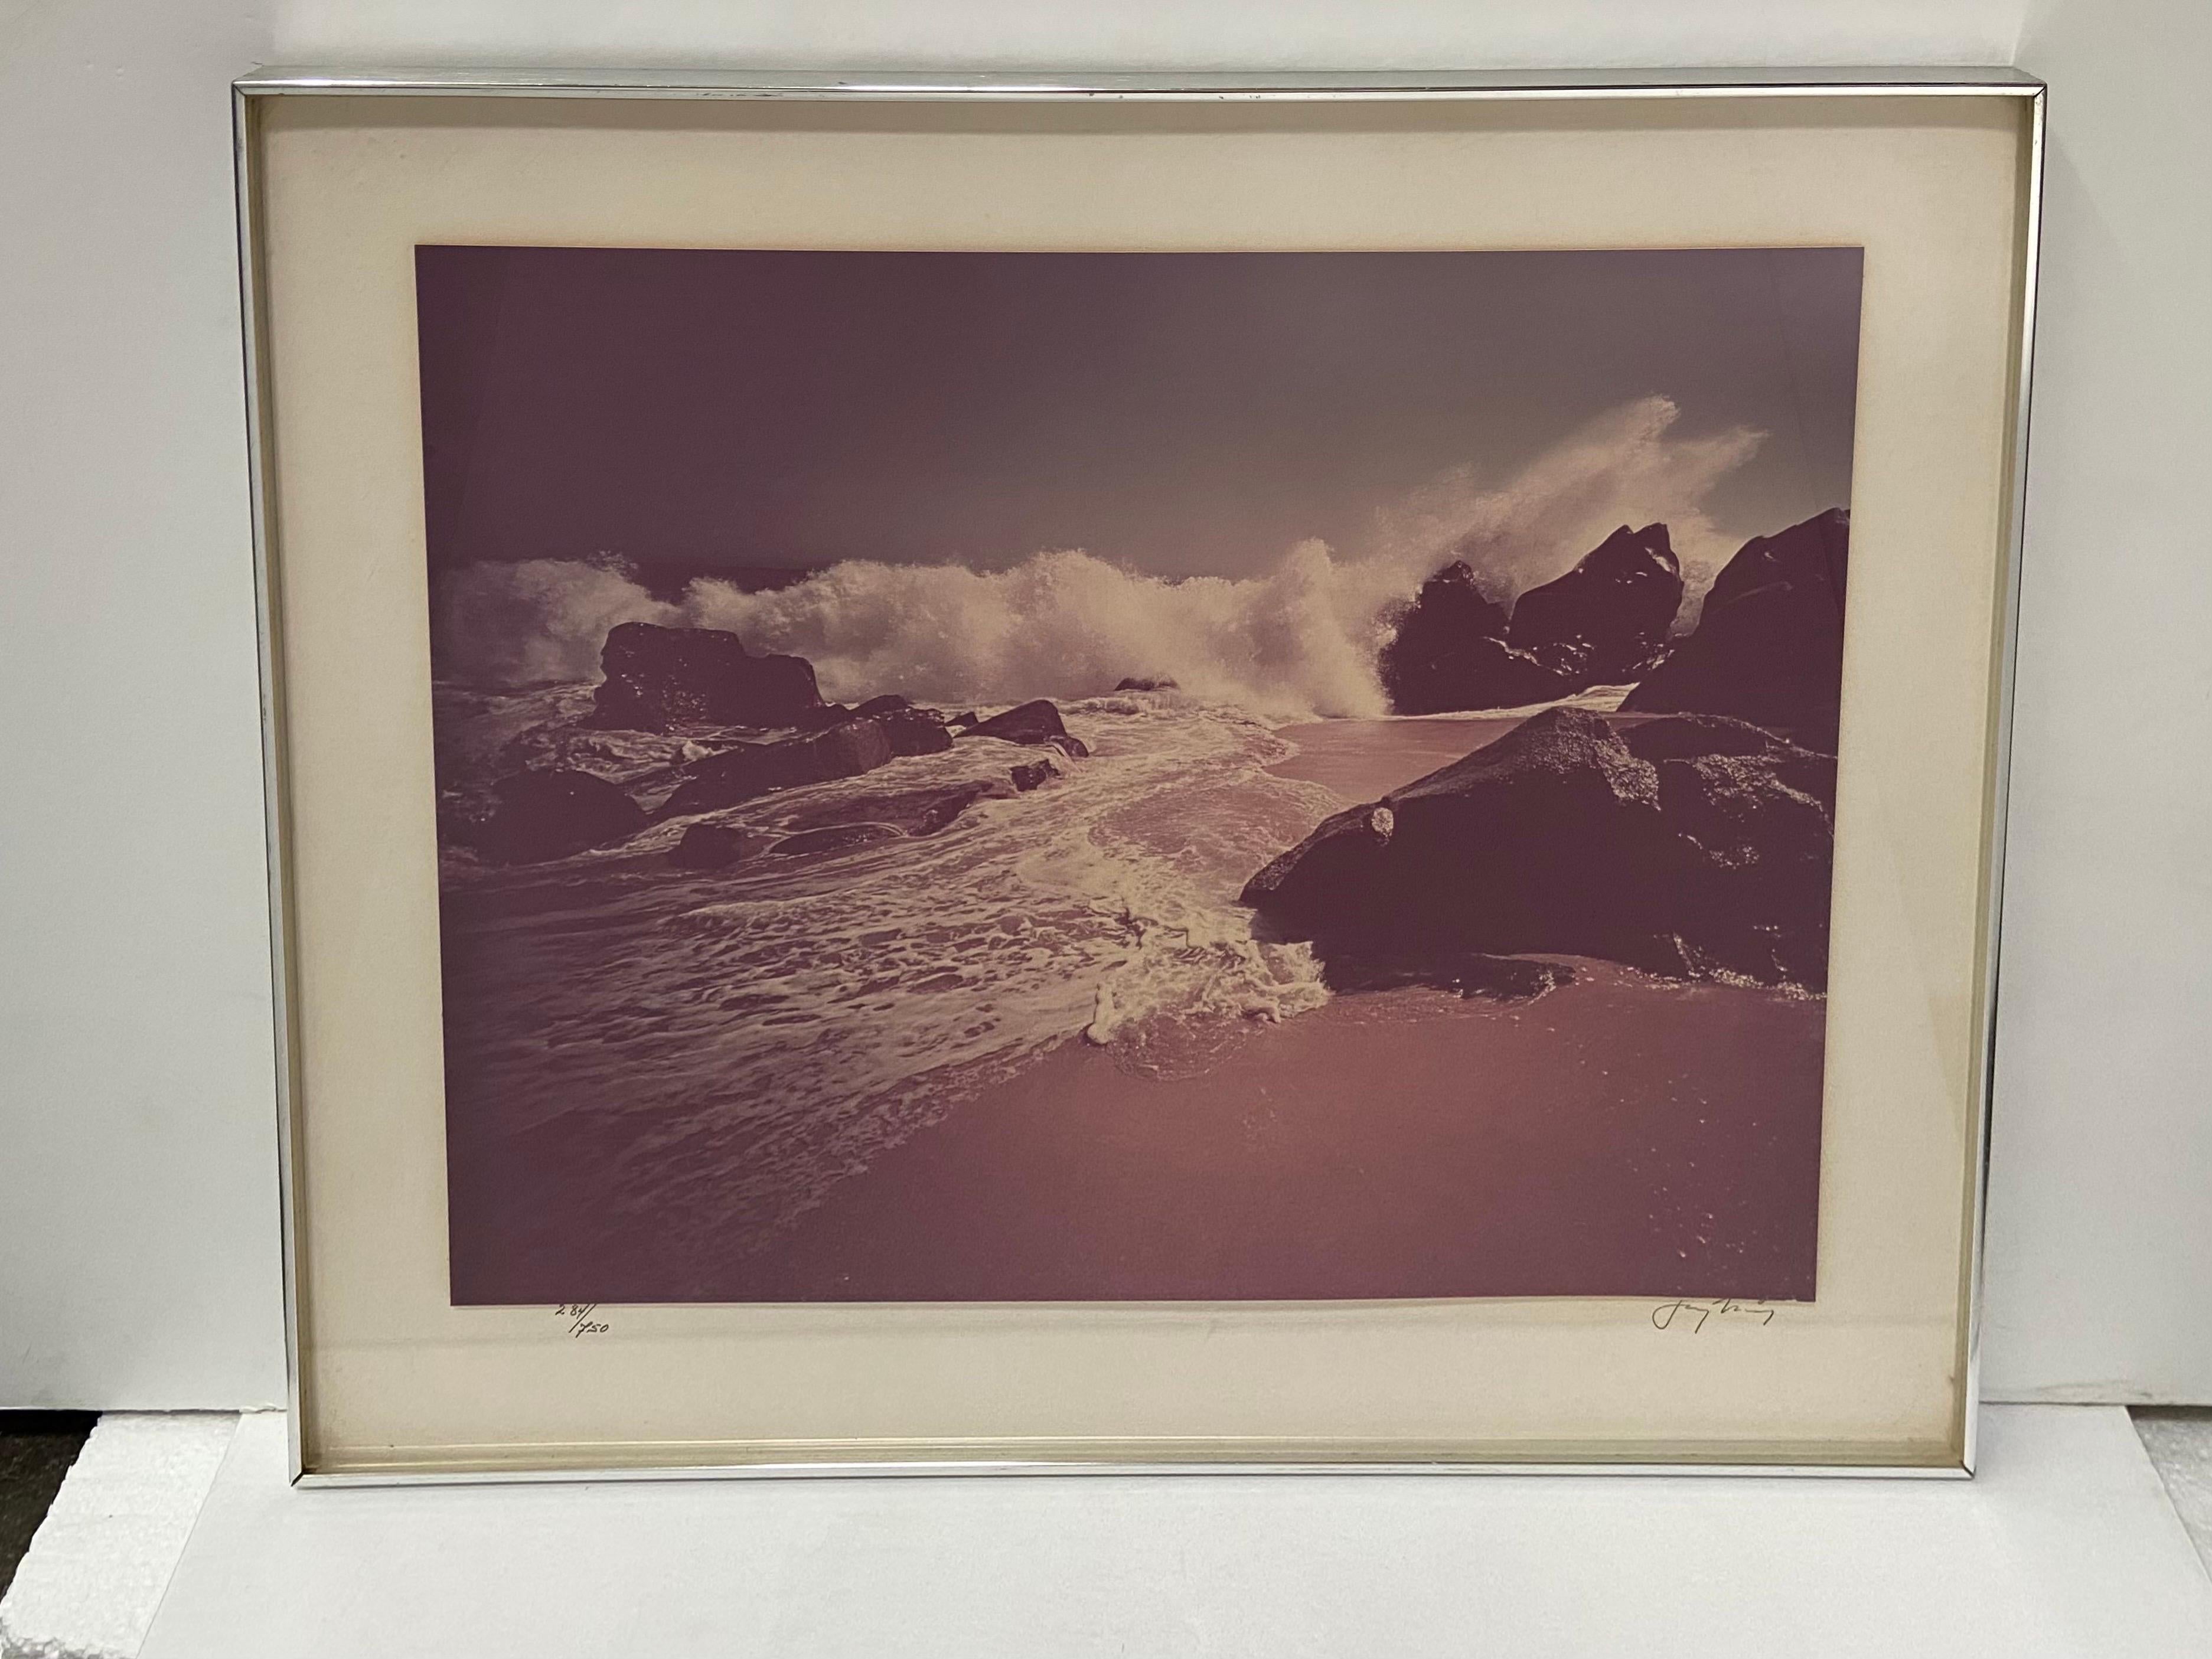 Photographie vintage d'une scène de plage datant des années 1970, réalisée par le photographe new-yorkais Jay Maisel (né en 1931). Cette photographie a un cadre d'époque datant des années 1970 et conserve les informations d'origine au verso. Cette